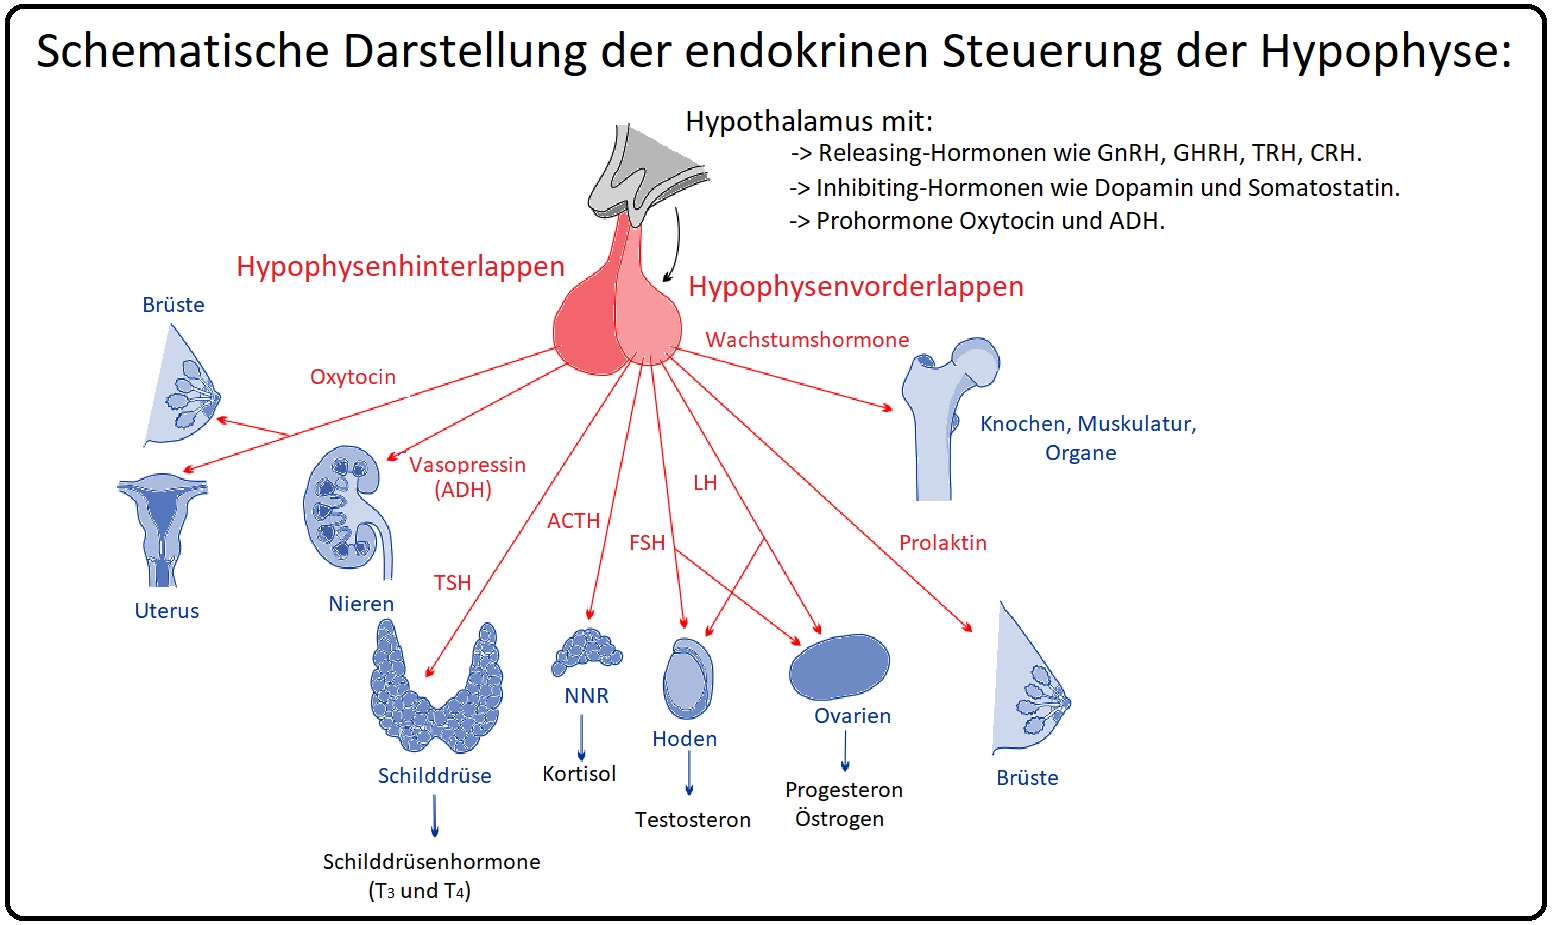 1192 Schematische Darstellung der endokrinen Steuerung der Hypophyse